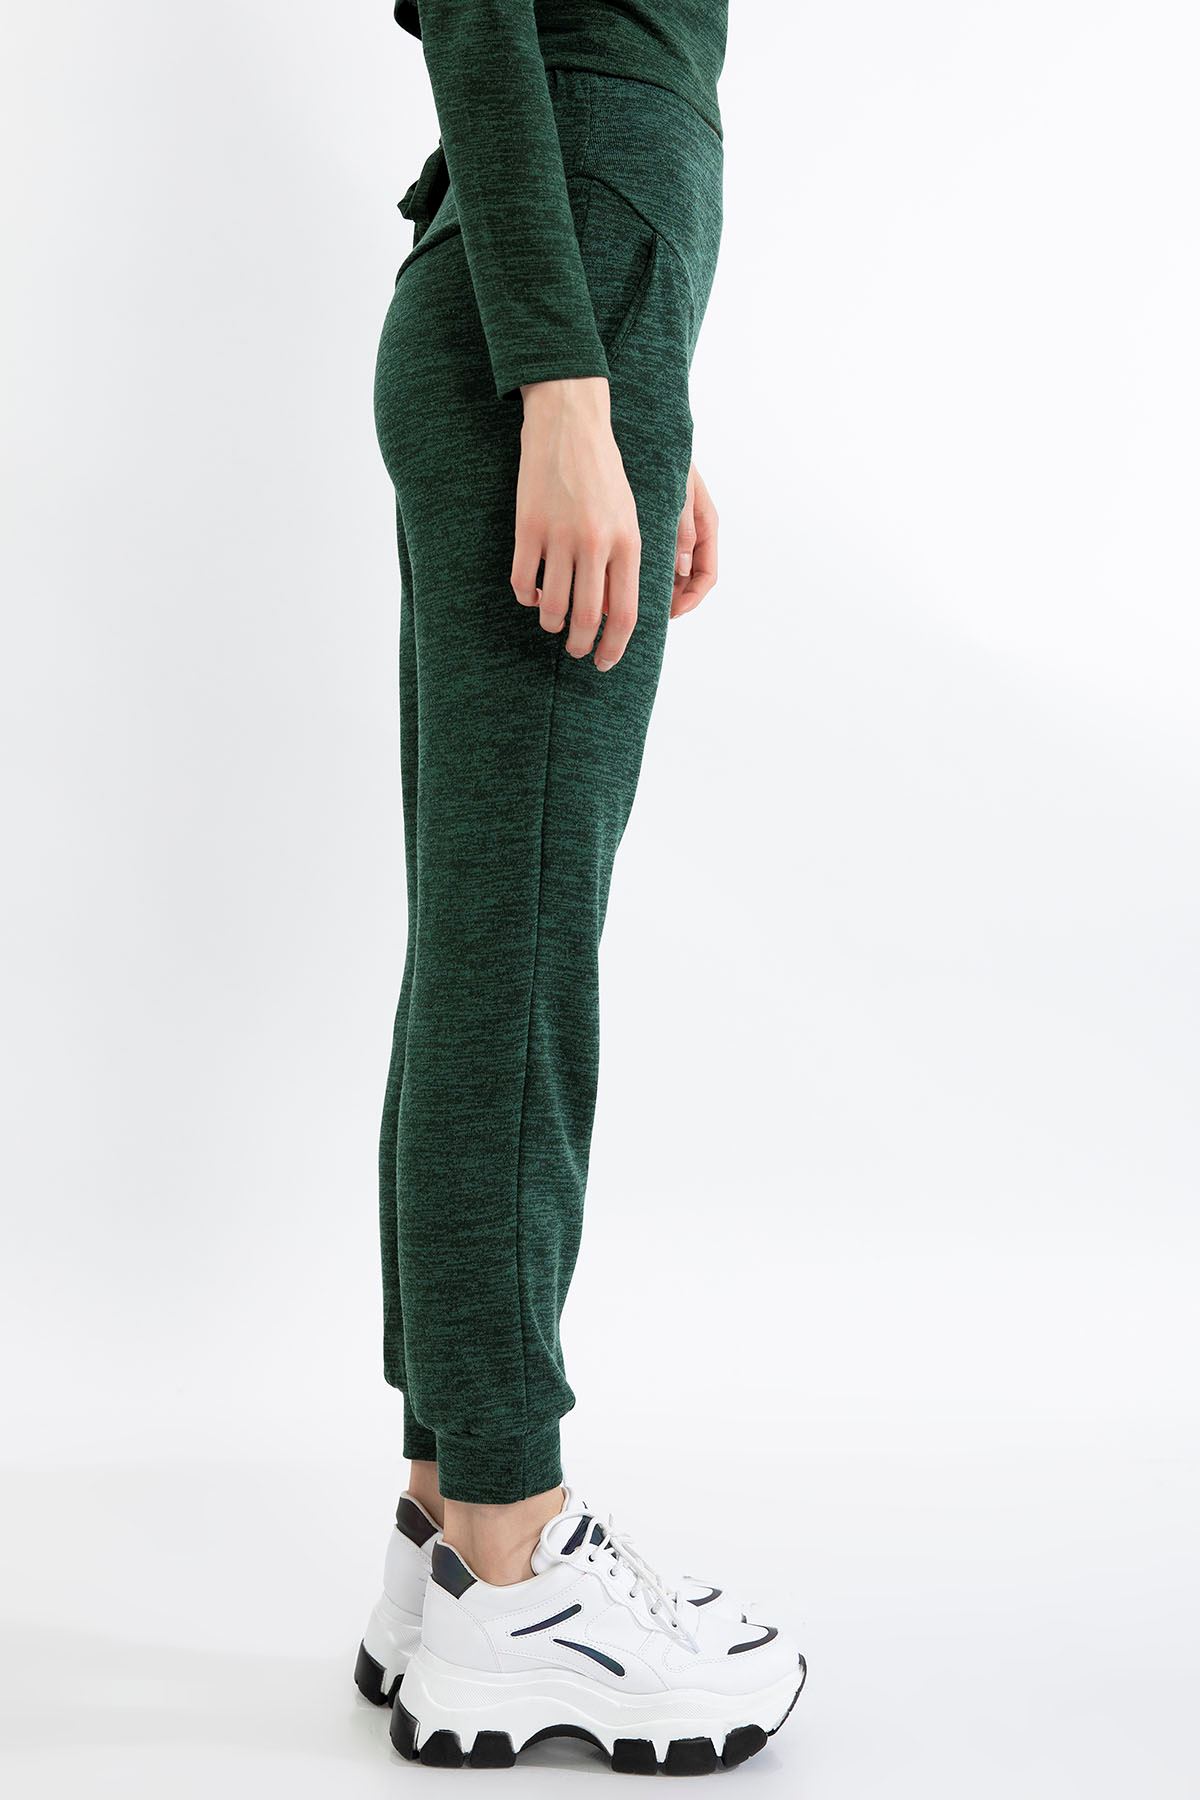 меланж ткань длинные свободные женские брюки - Изумрудный-Зелёный